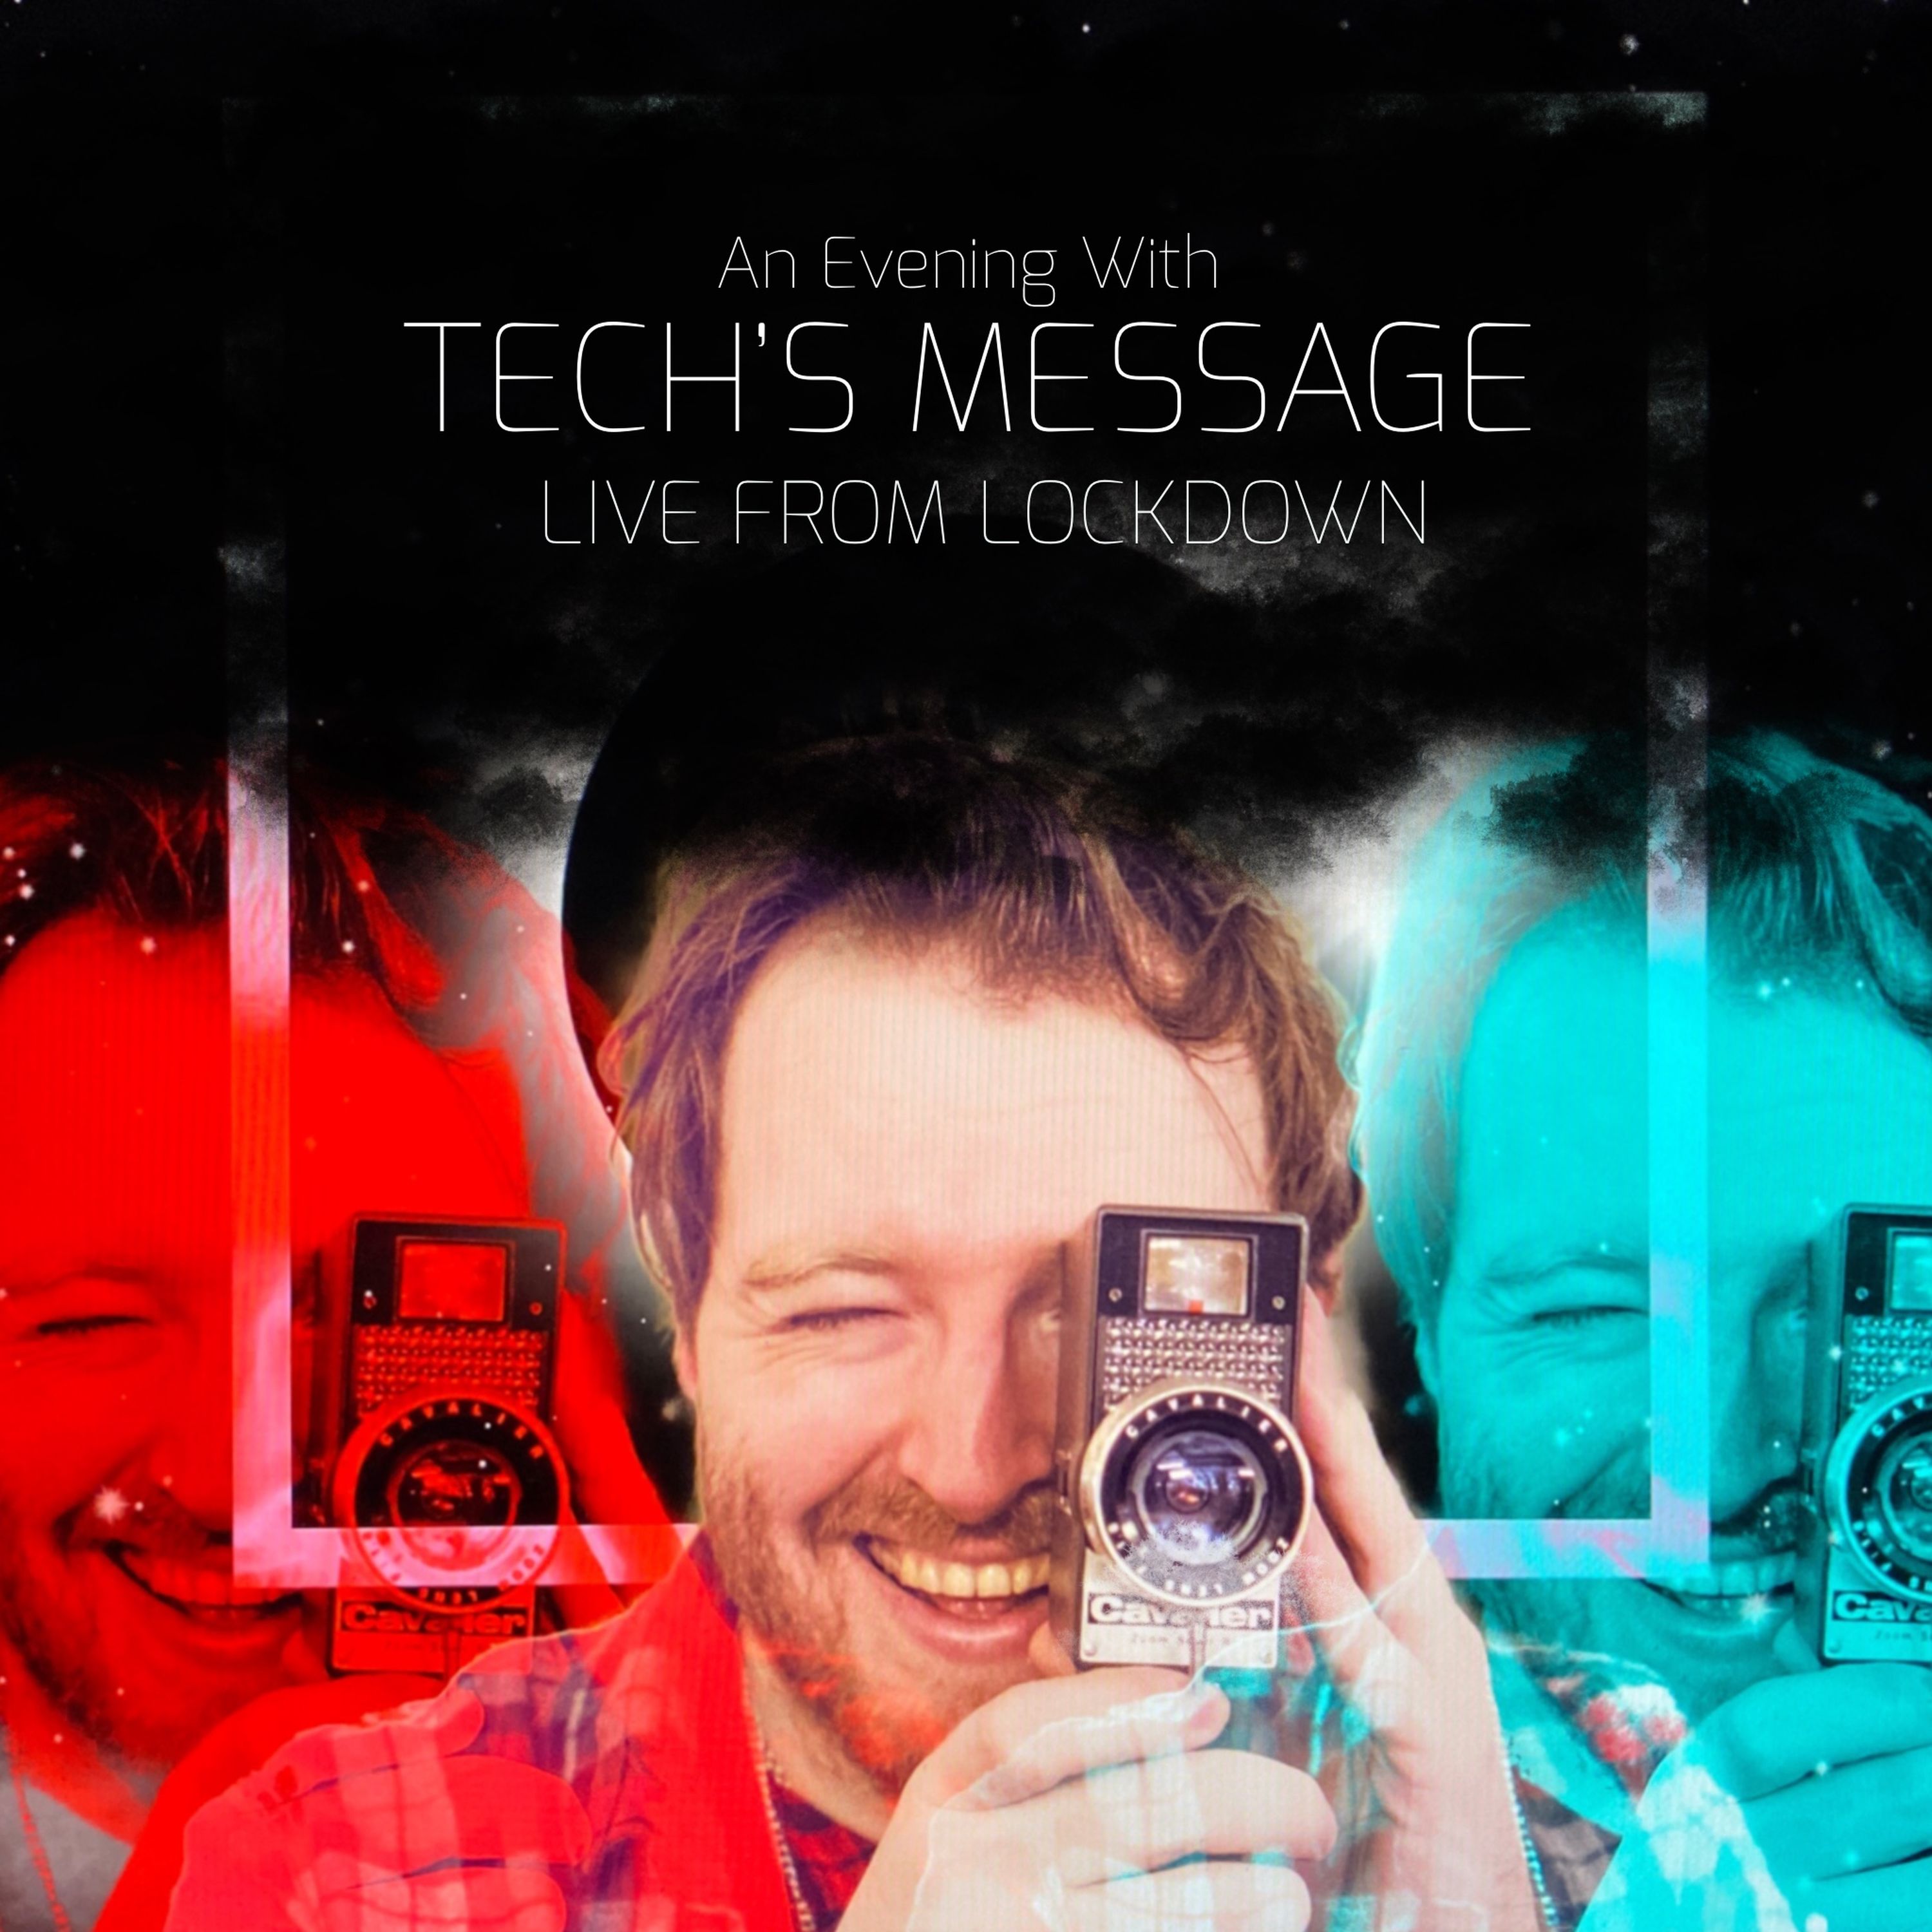 Tech's Message: News & Nostalgia With Nate Lanxon & Ian Morris